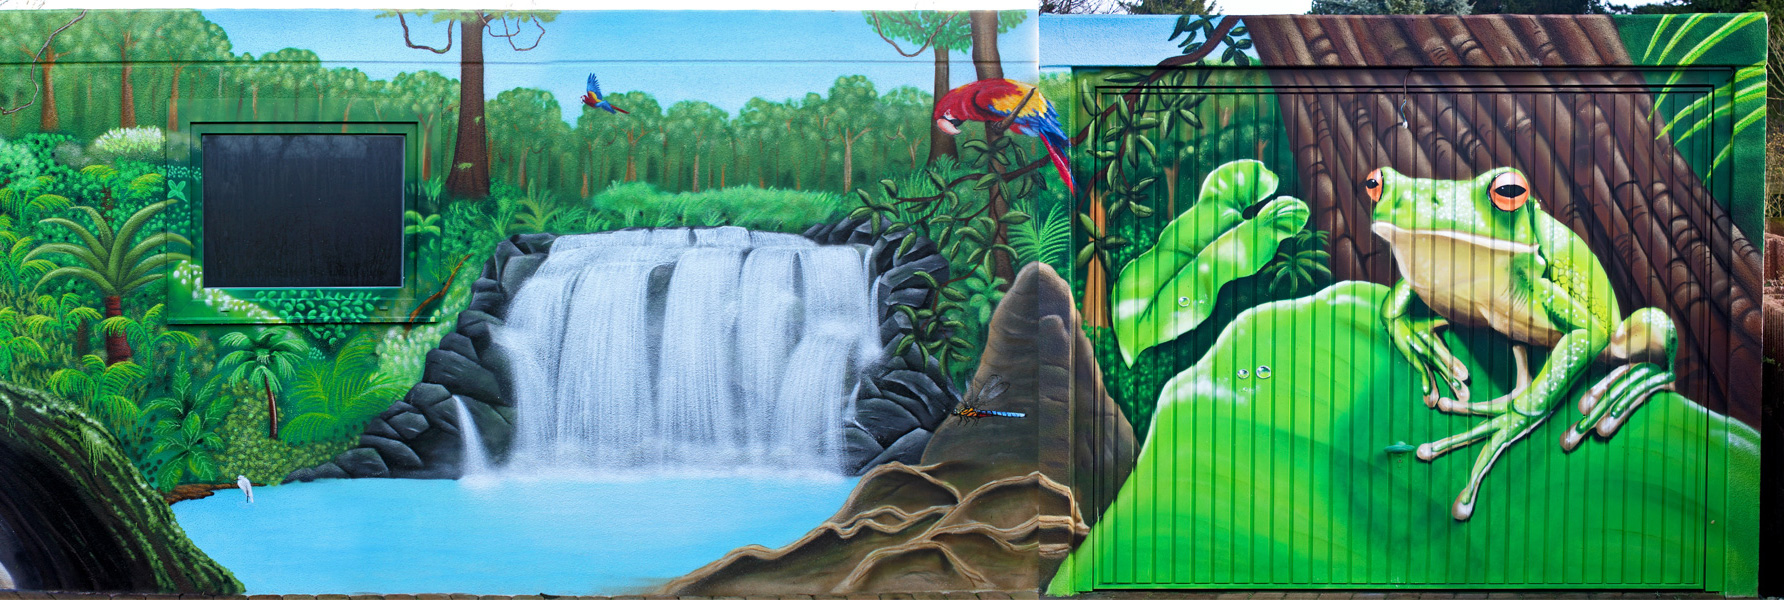 jungle-panorama graffiti